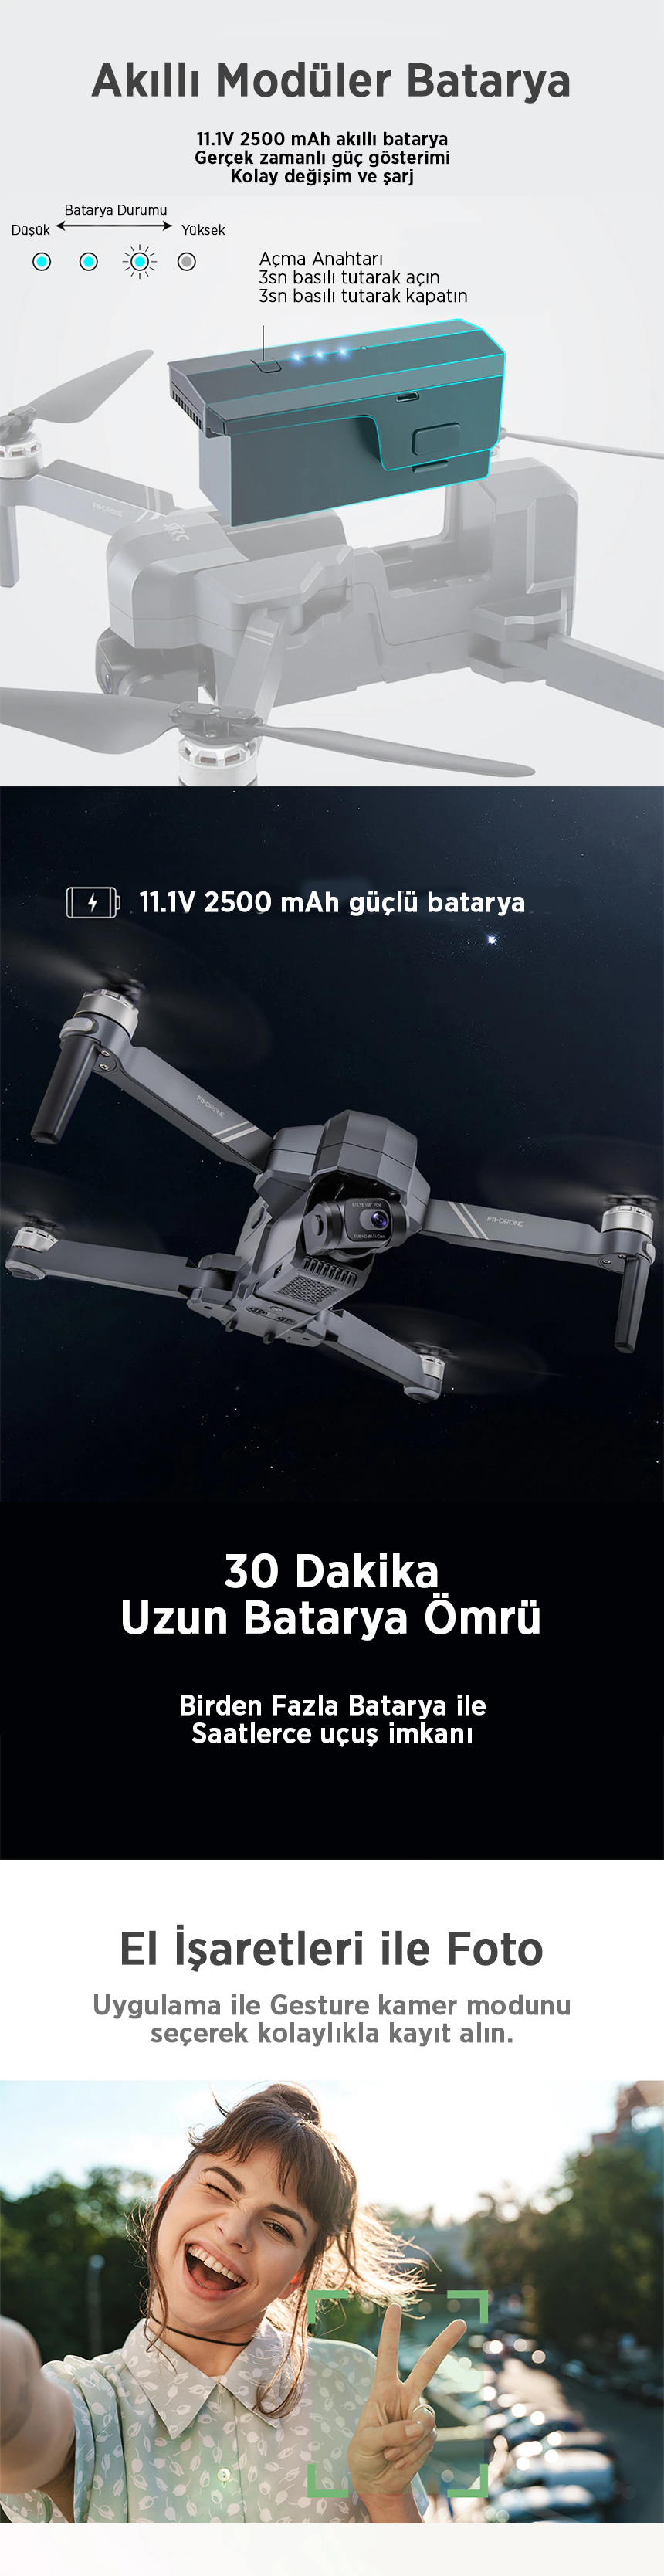 4K drone